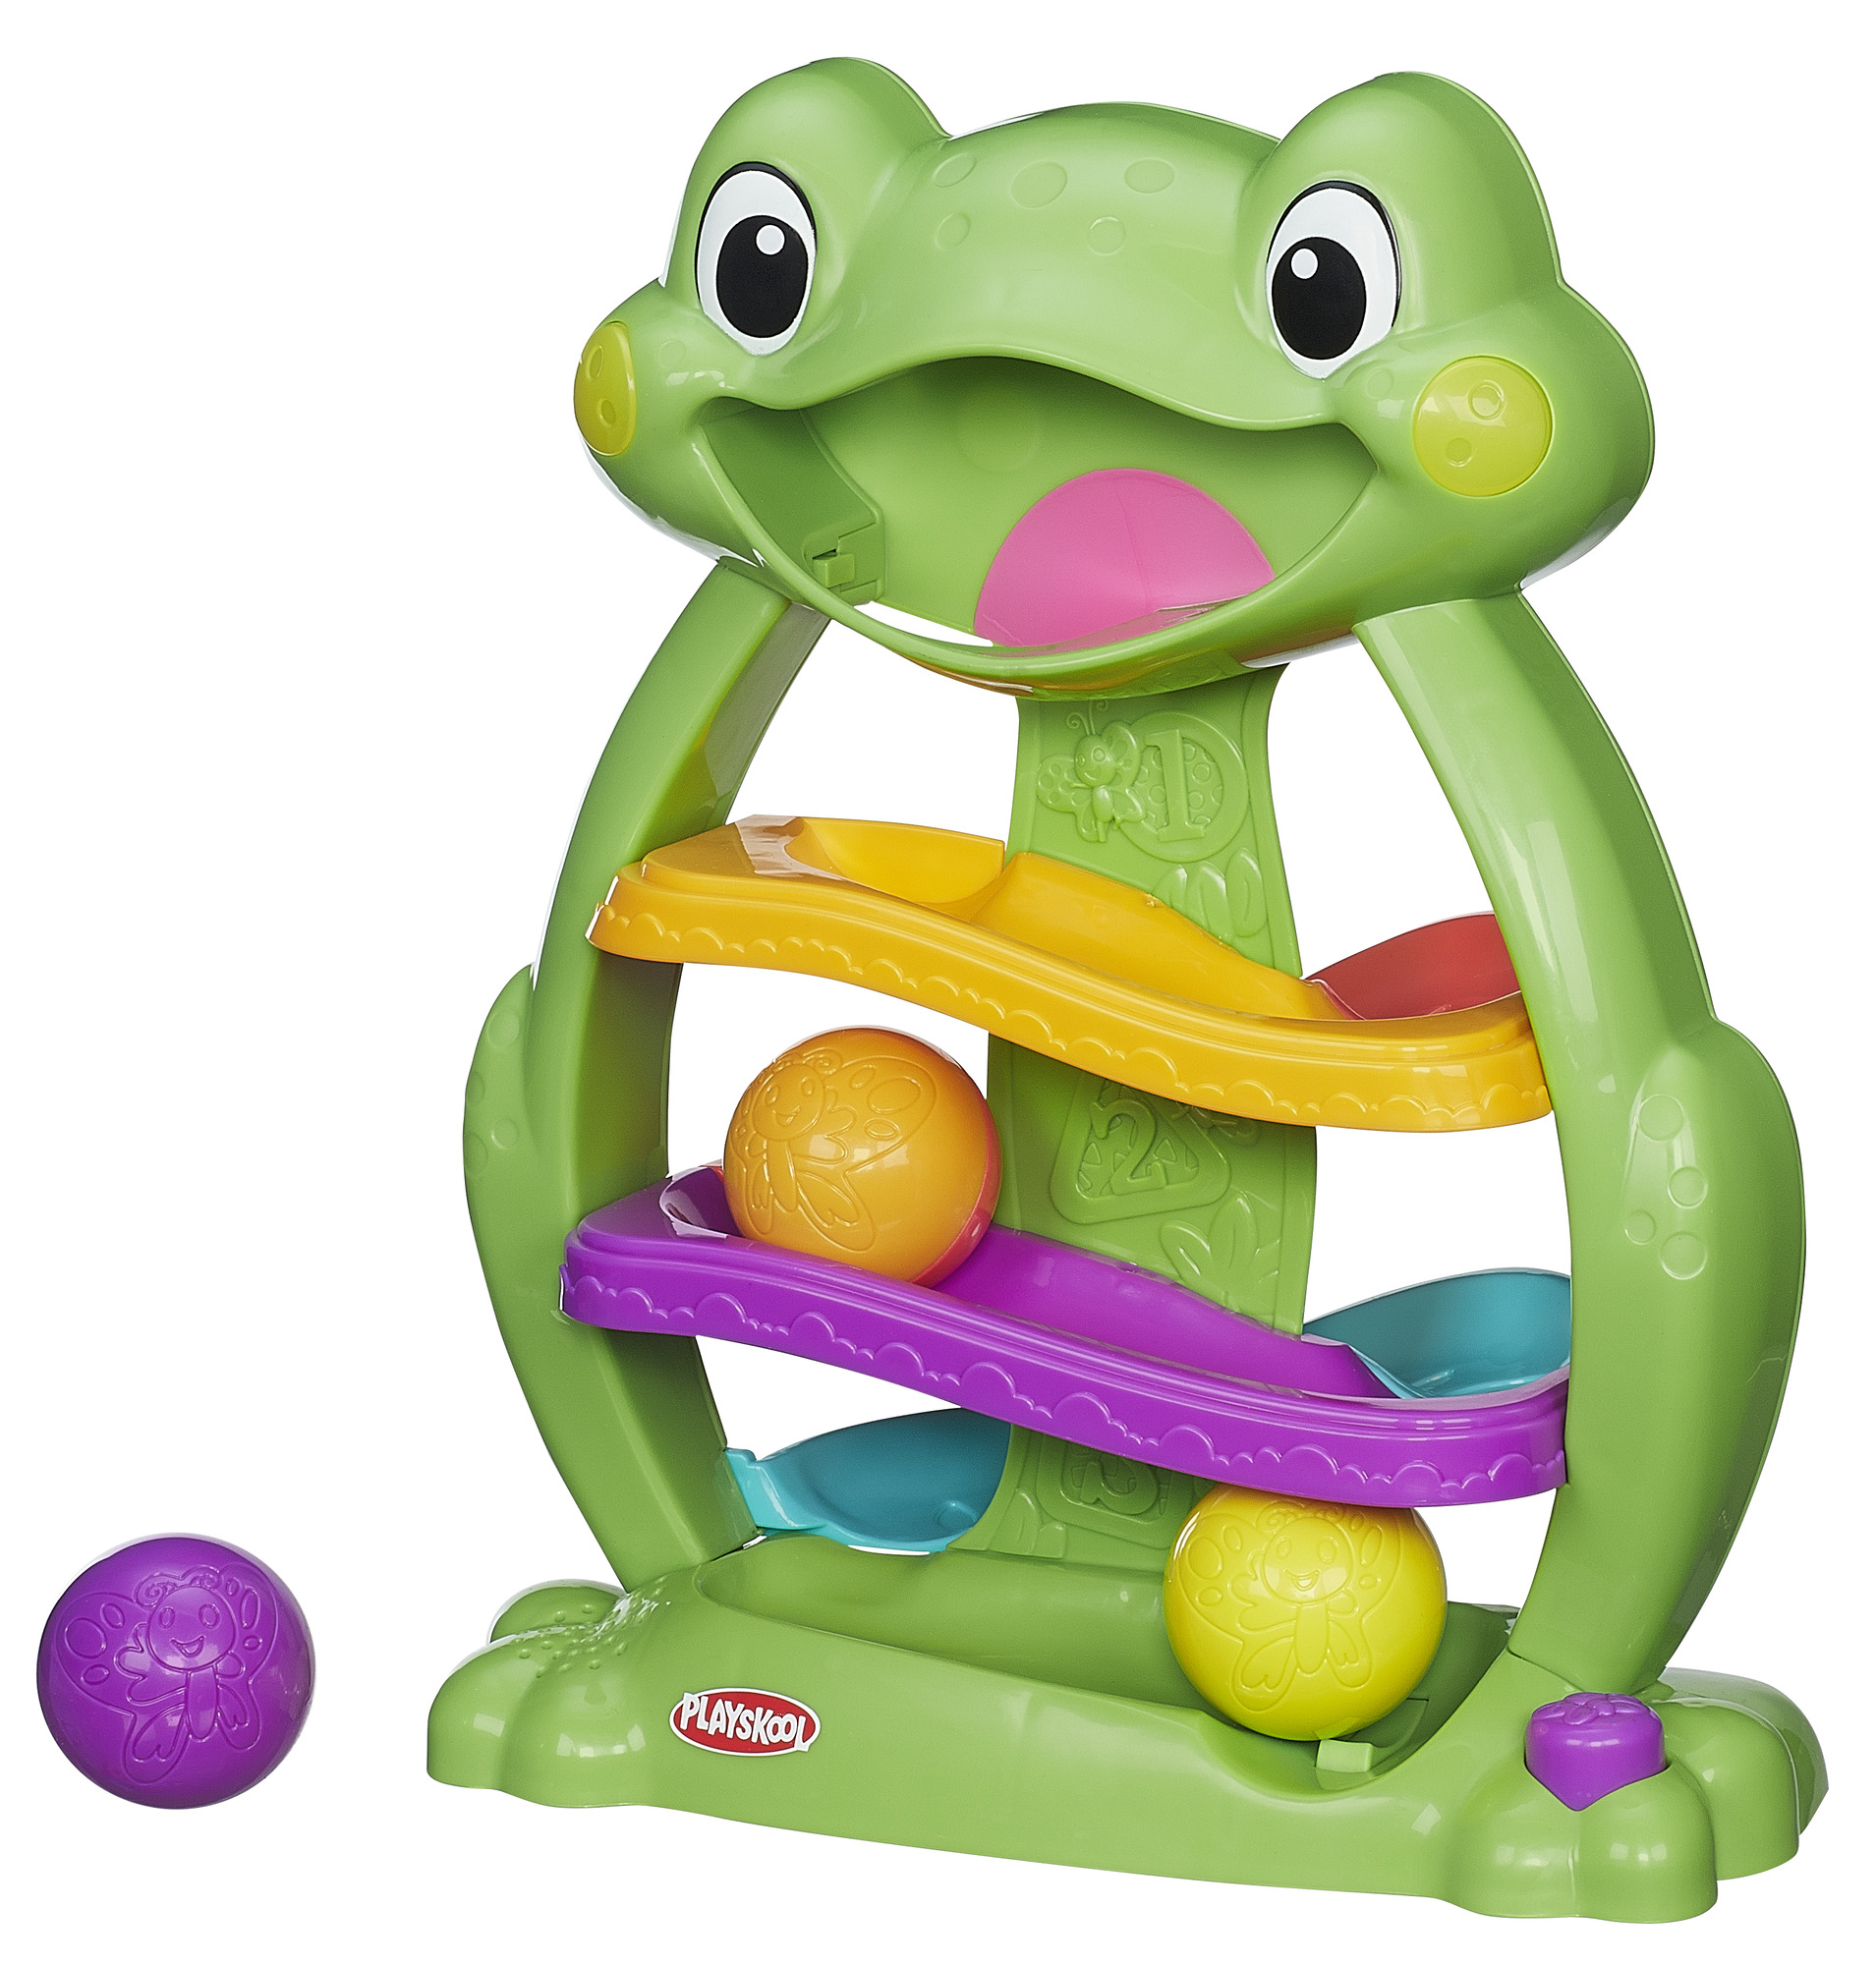 Playskool Tumble 'n Glow Froggio Toy - image 1 of 10